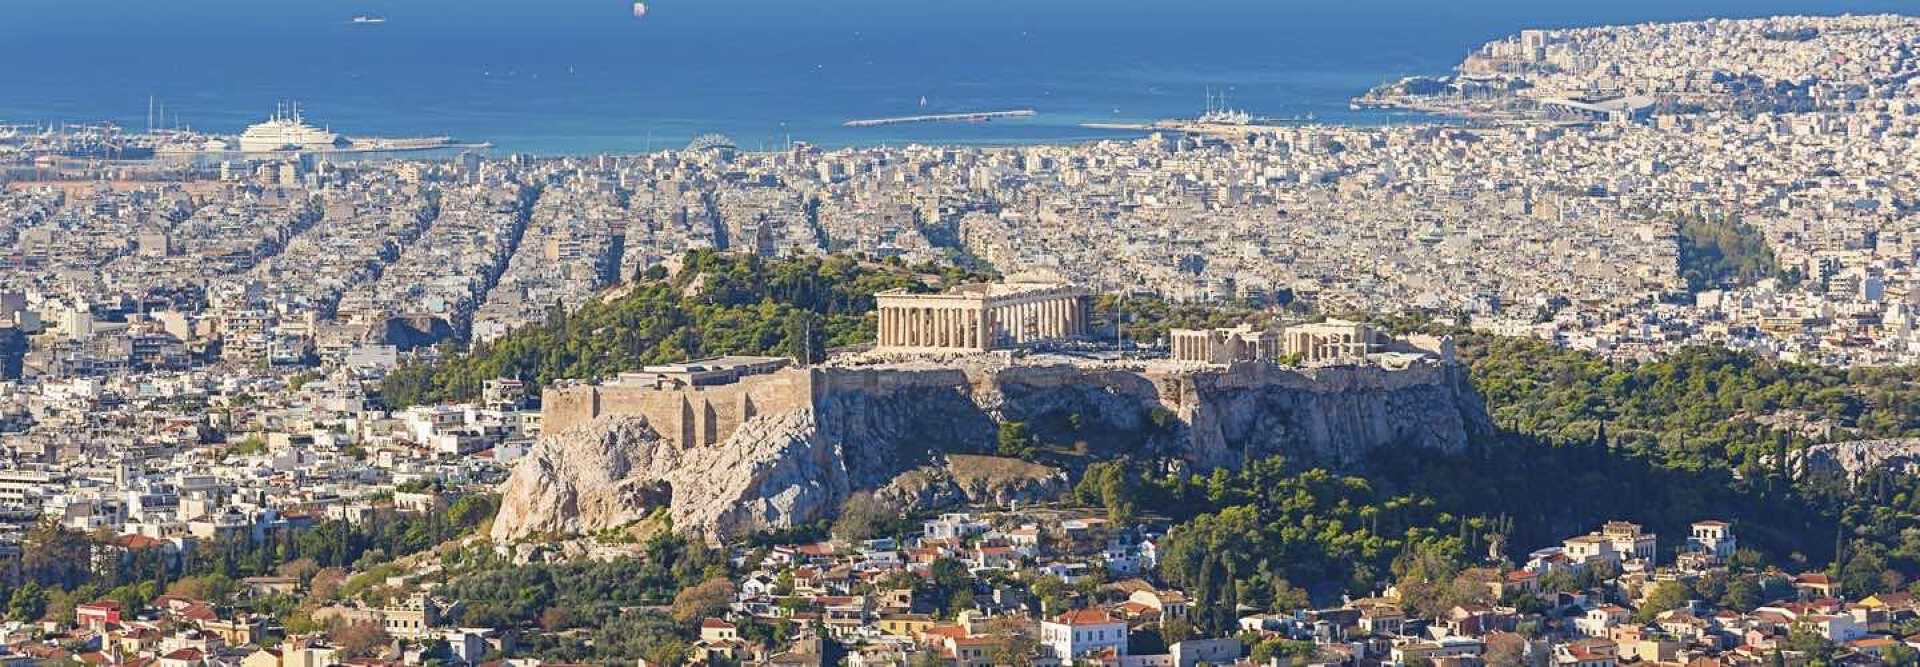 Athènes avec l'Acropole et son Parthénon avec la mer et les yachts en arrière-plan